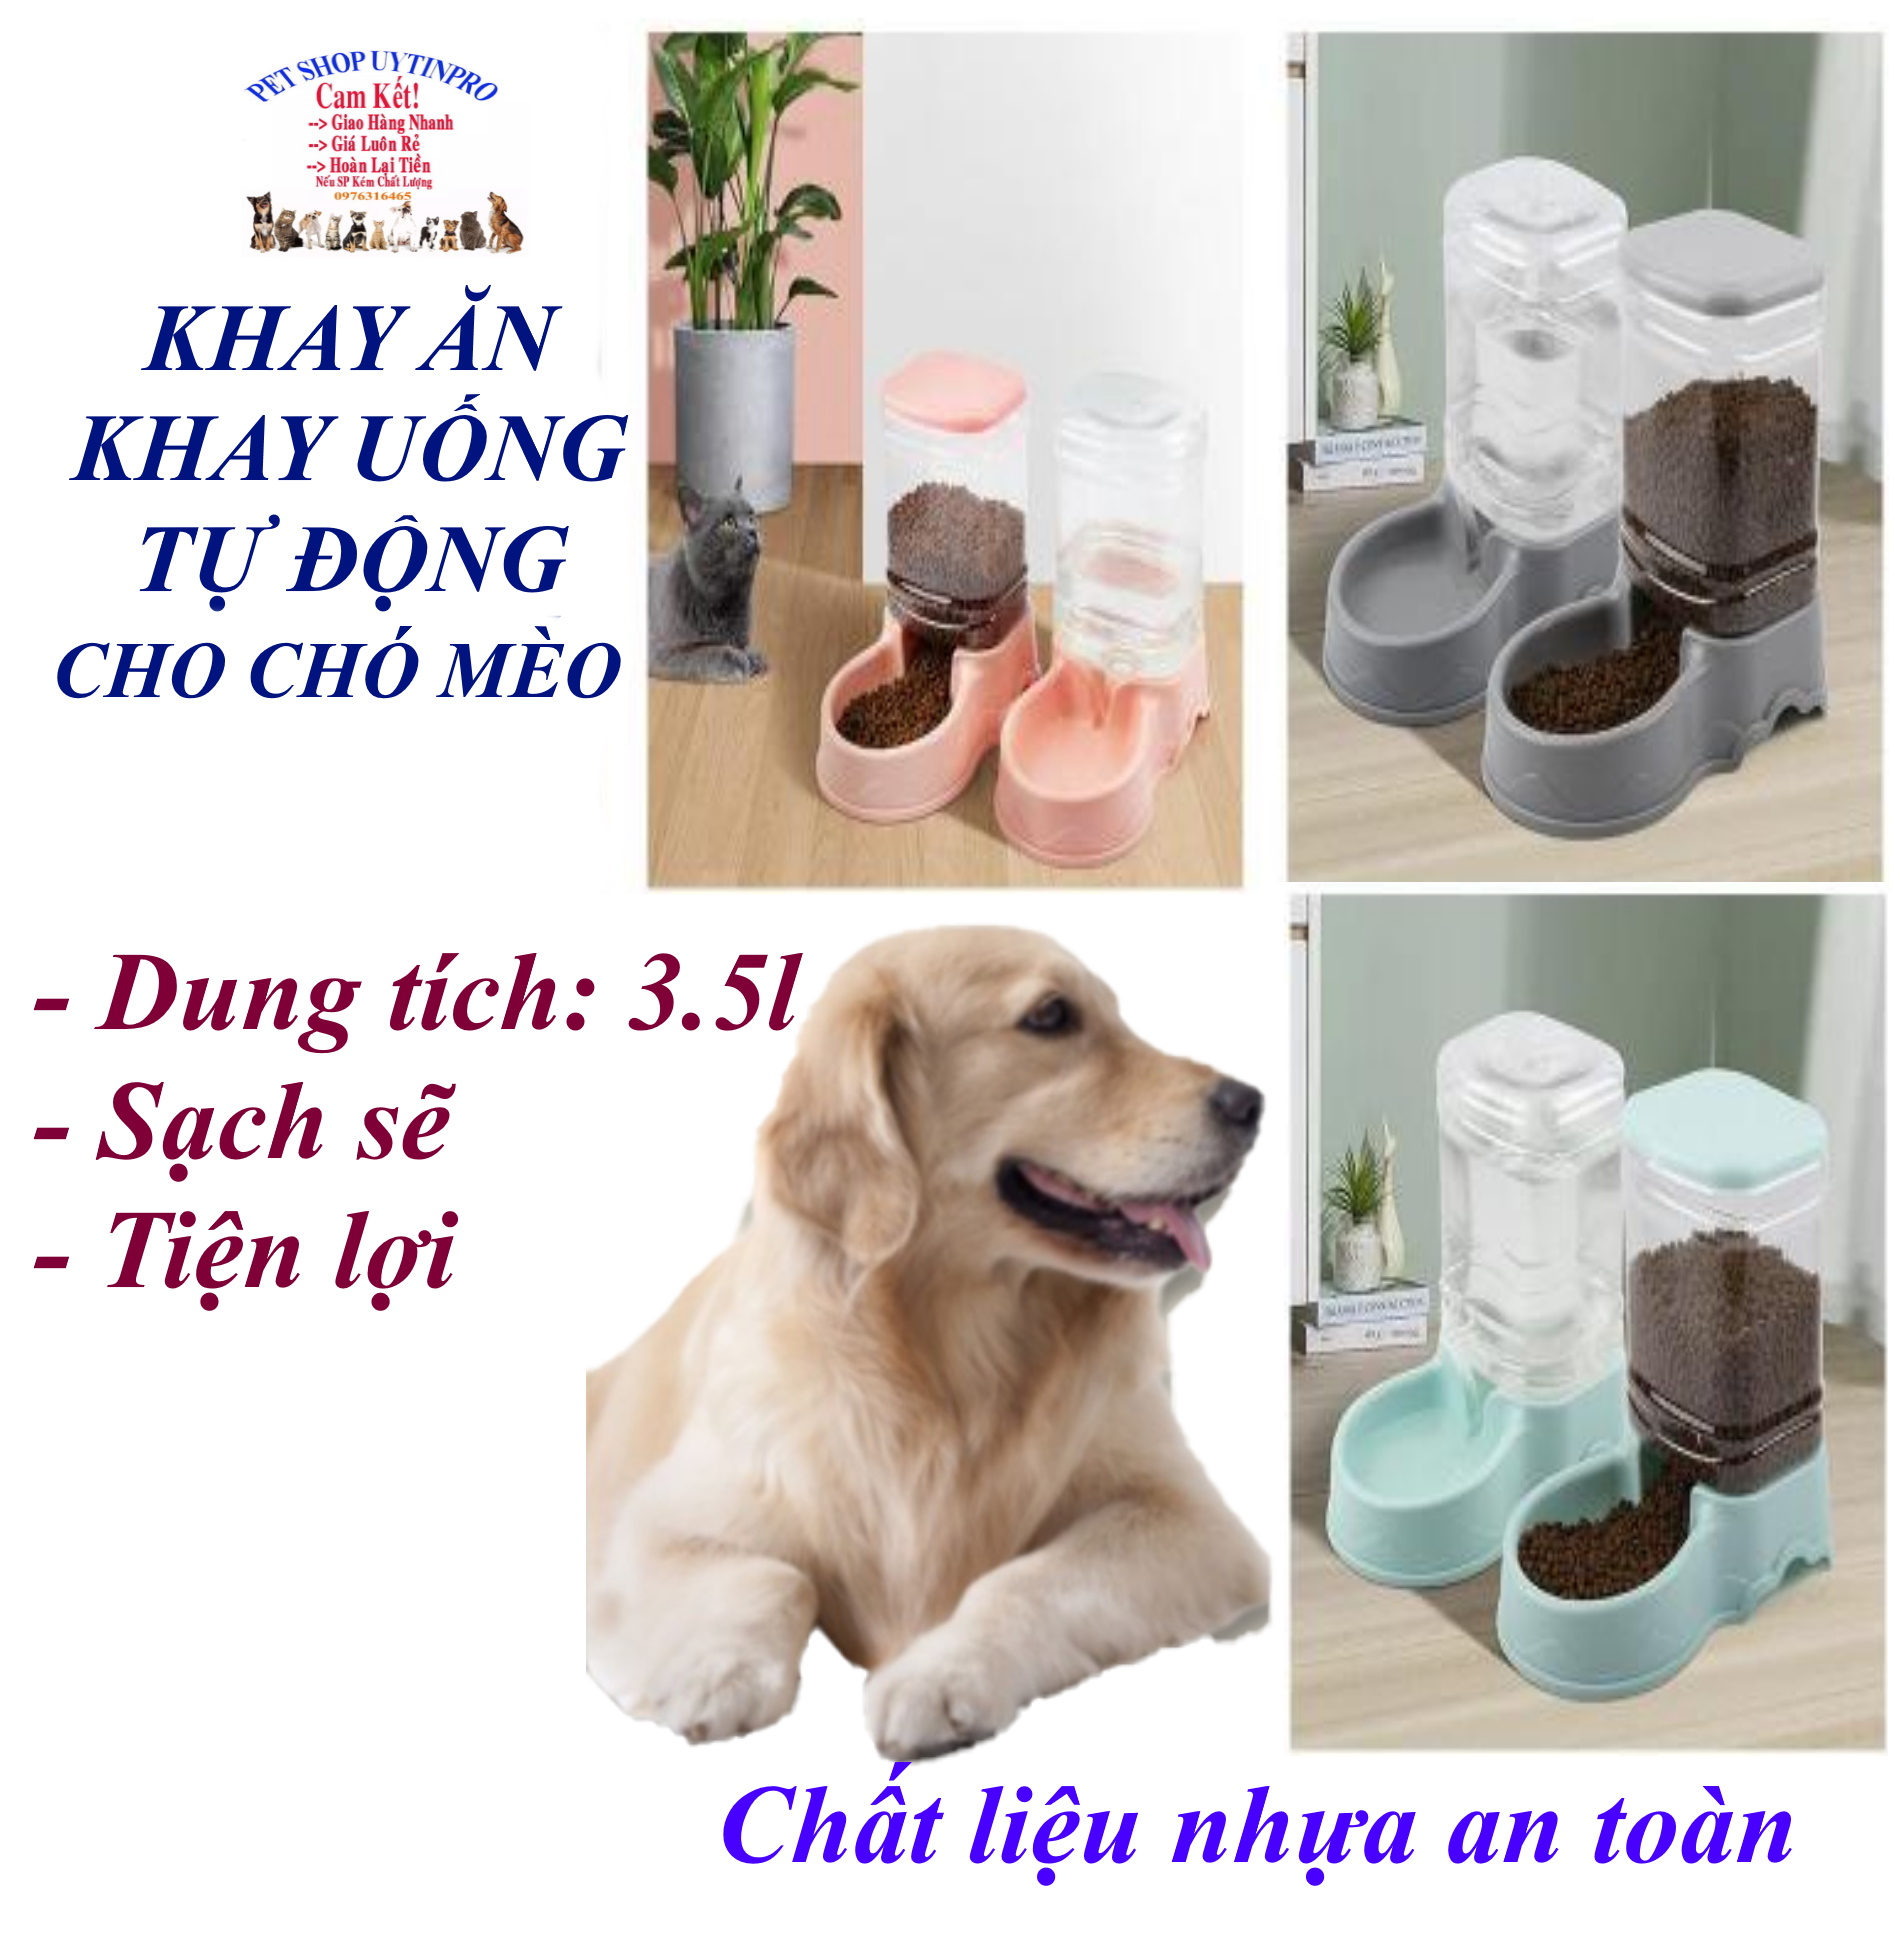 Khay ăn hoặc Khay uống tự động cho Chó Mèo Dung tích 3.5l Khắc lượn sóng ở viền Chất liệu nhựa an toàn,Sạch sẽ, Tiện lợi